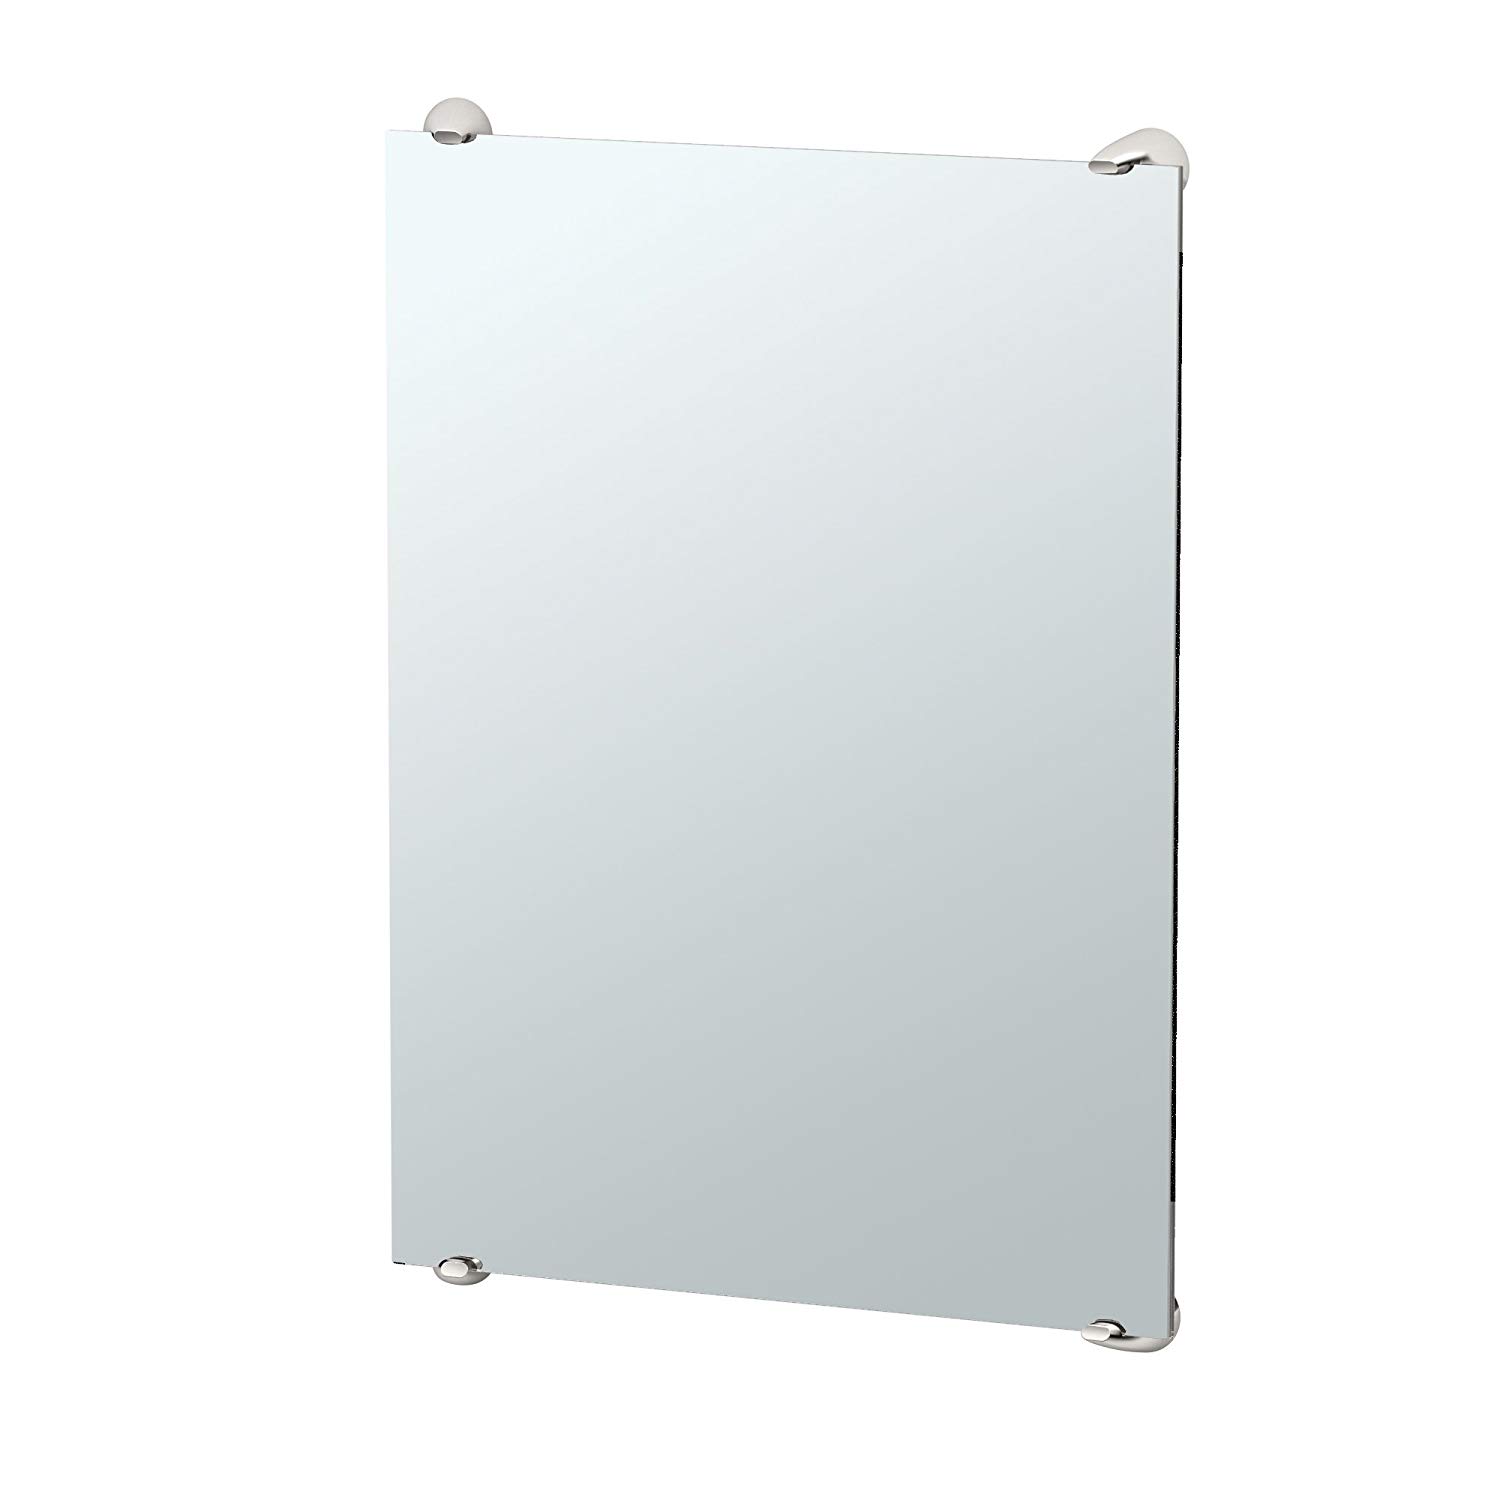 Brie 22x30" Minimalist Rectangular Mirror in Satin Nickel